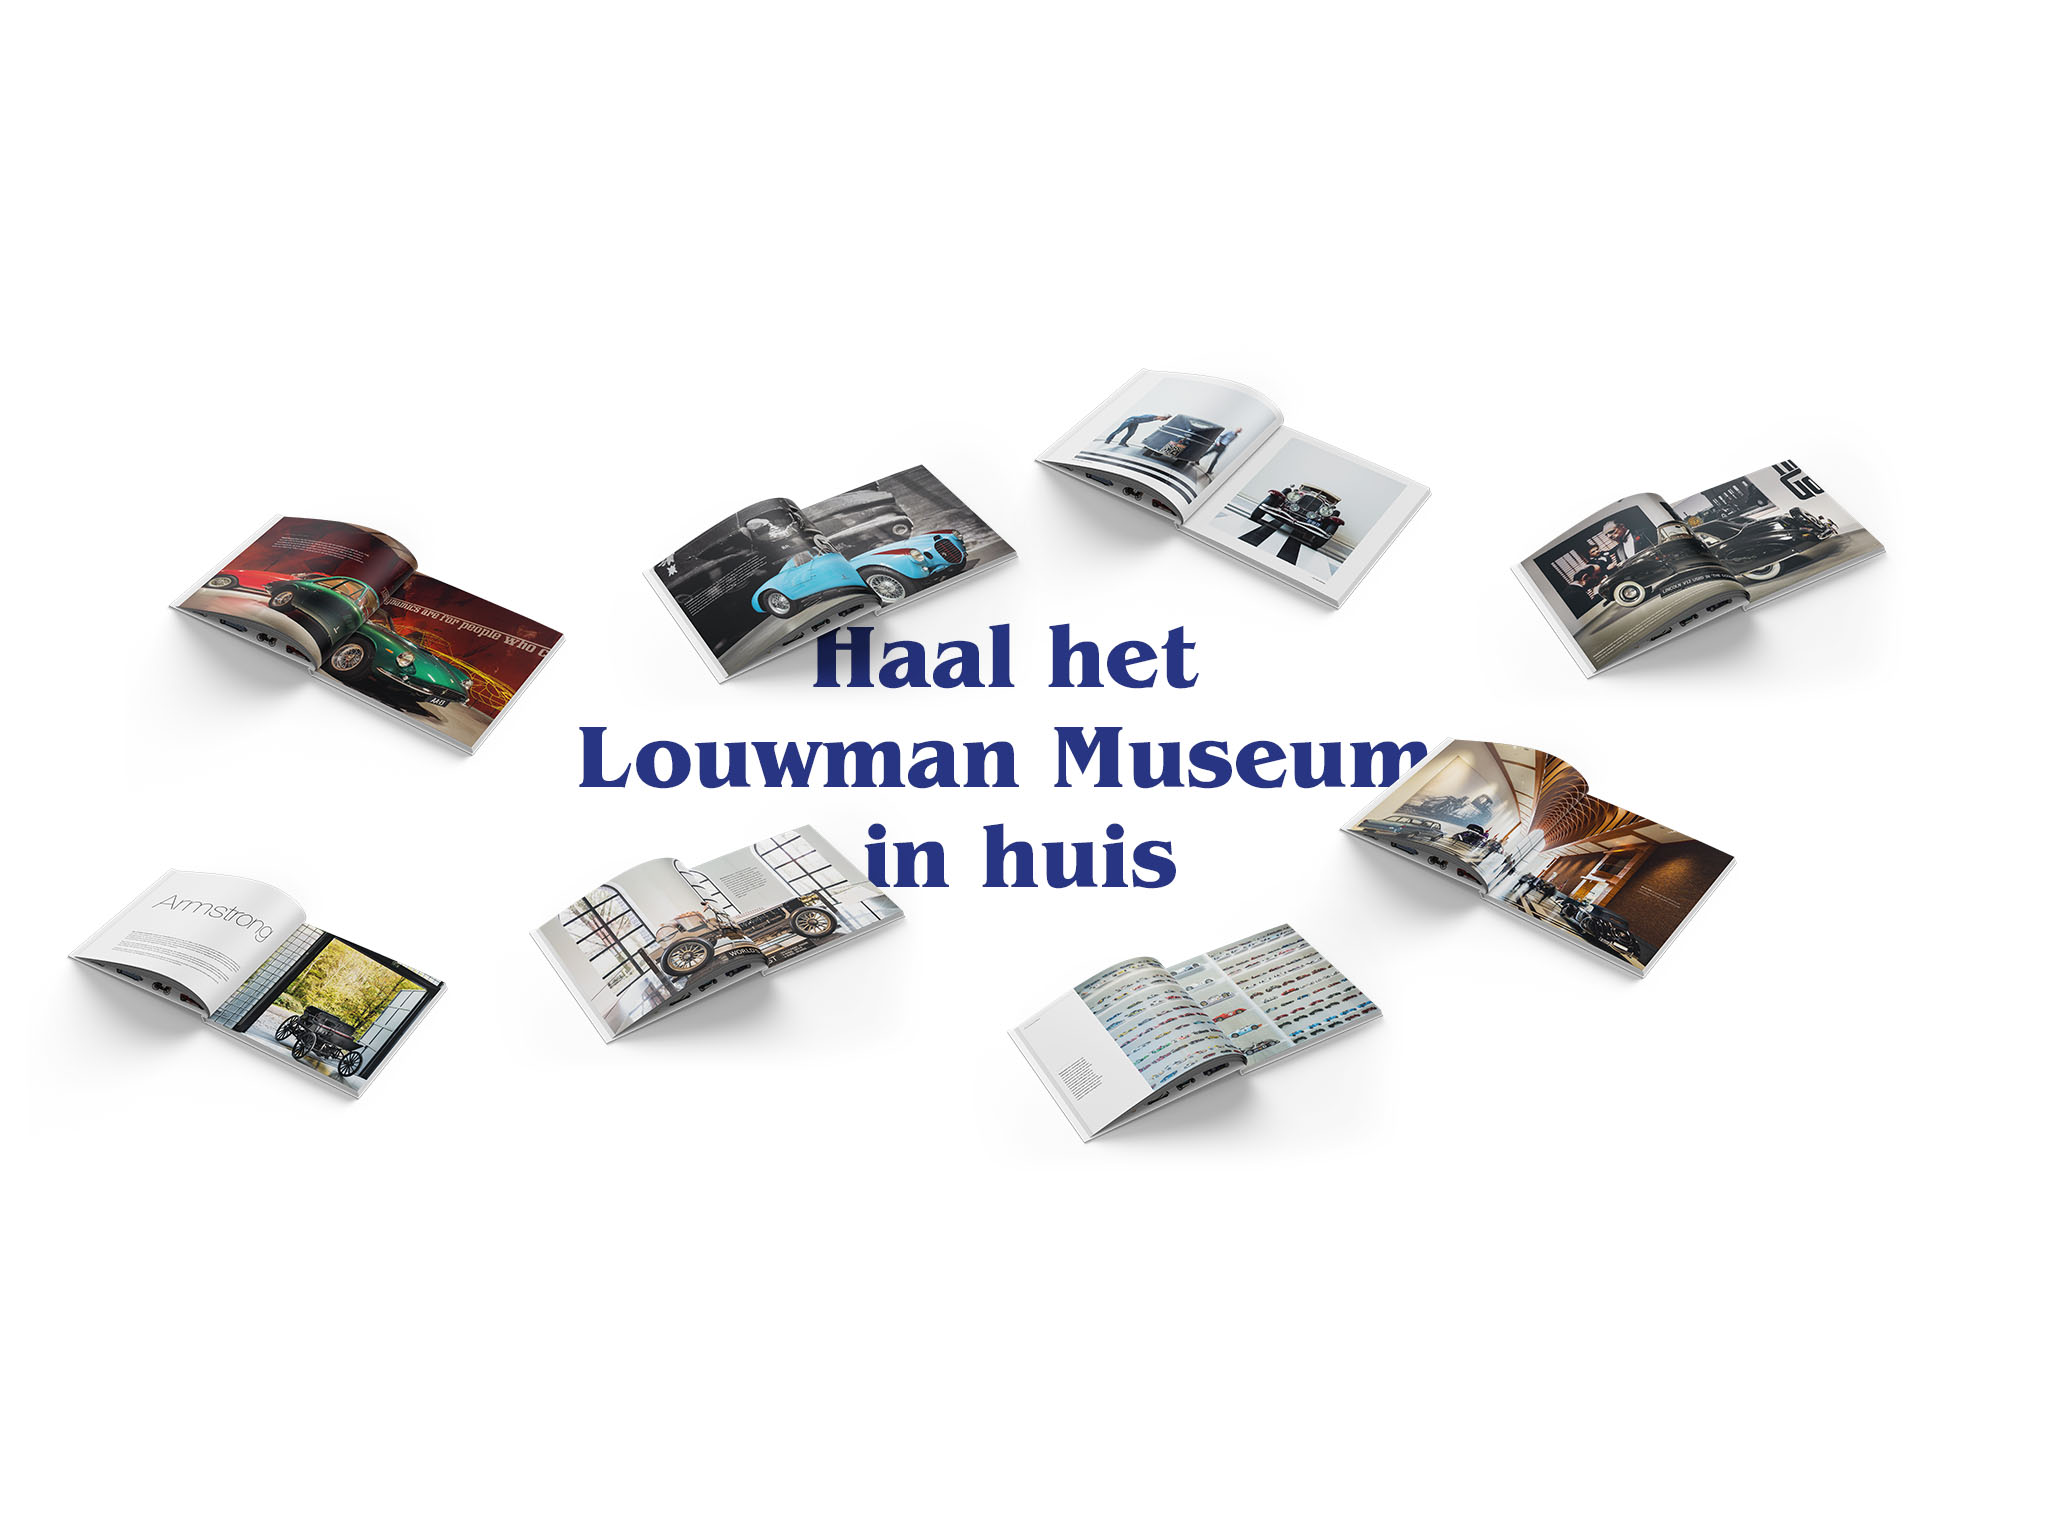 Haal het Louwman Museum in huis